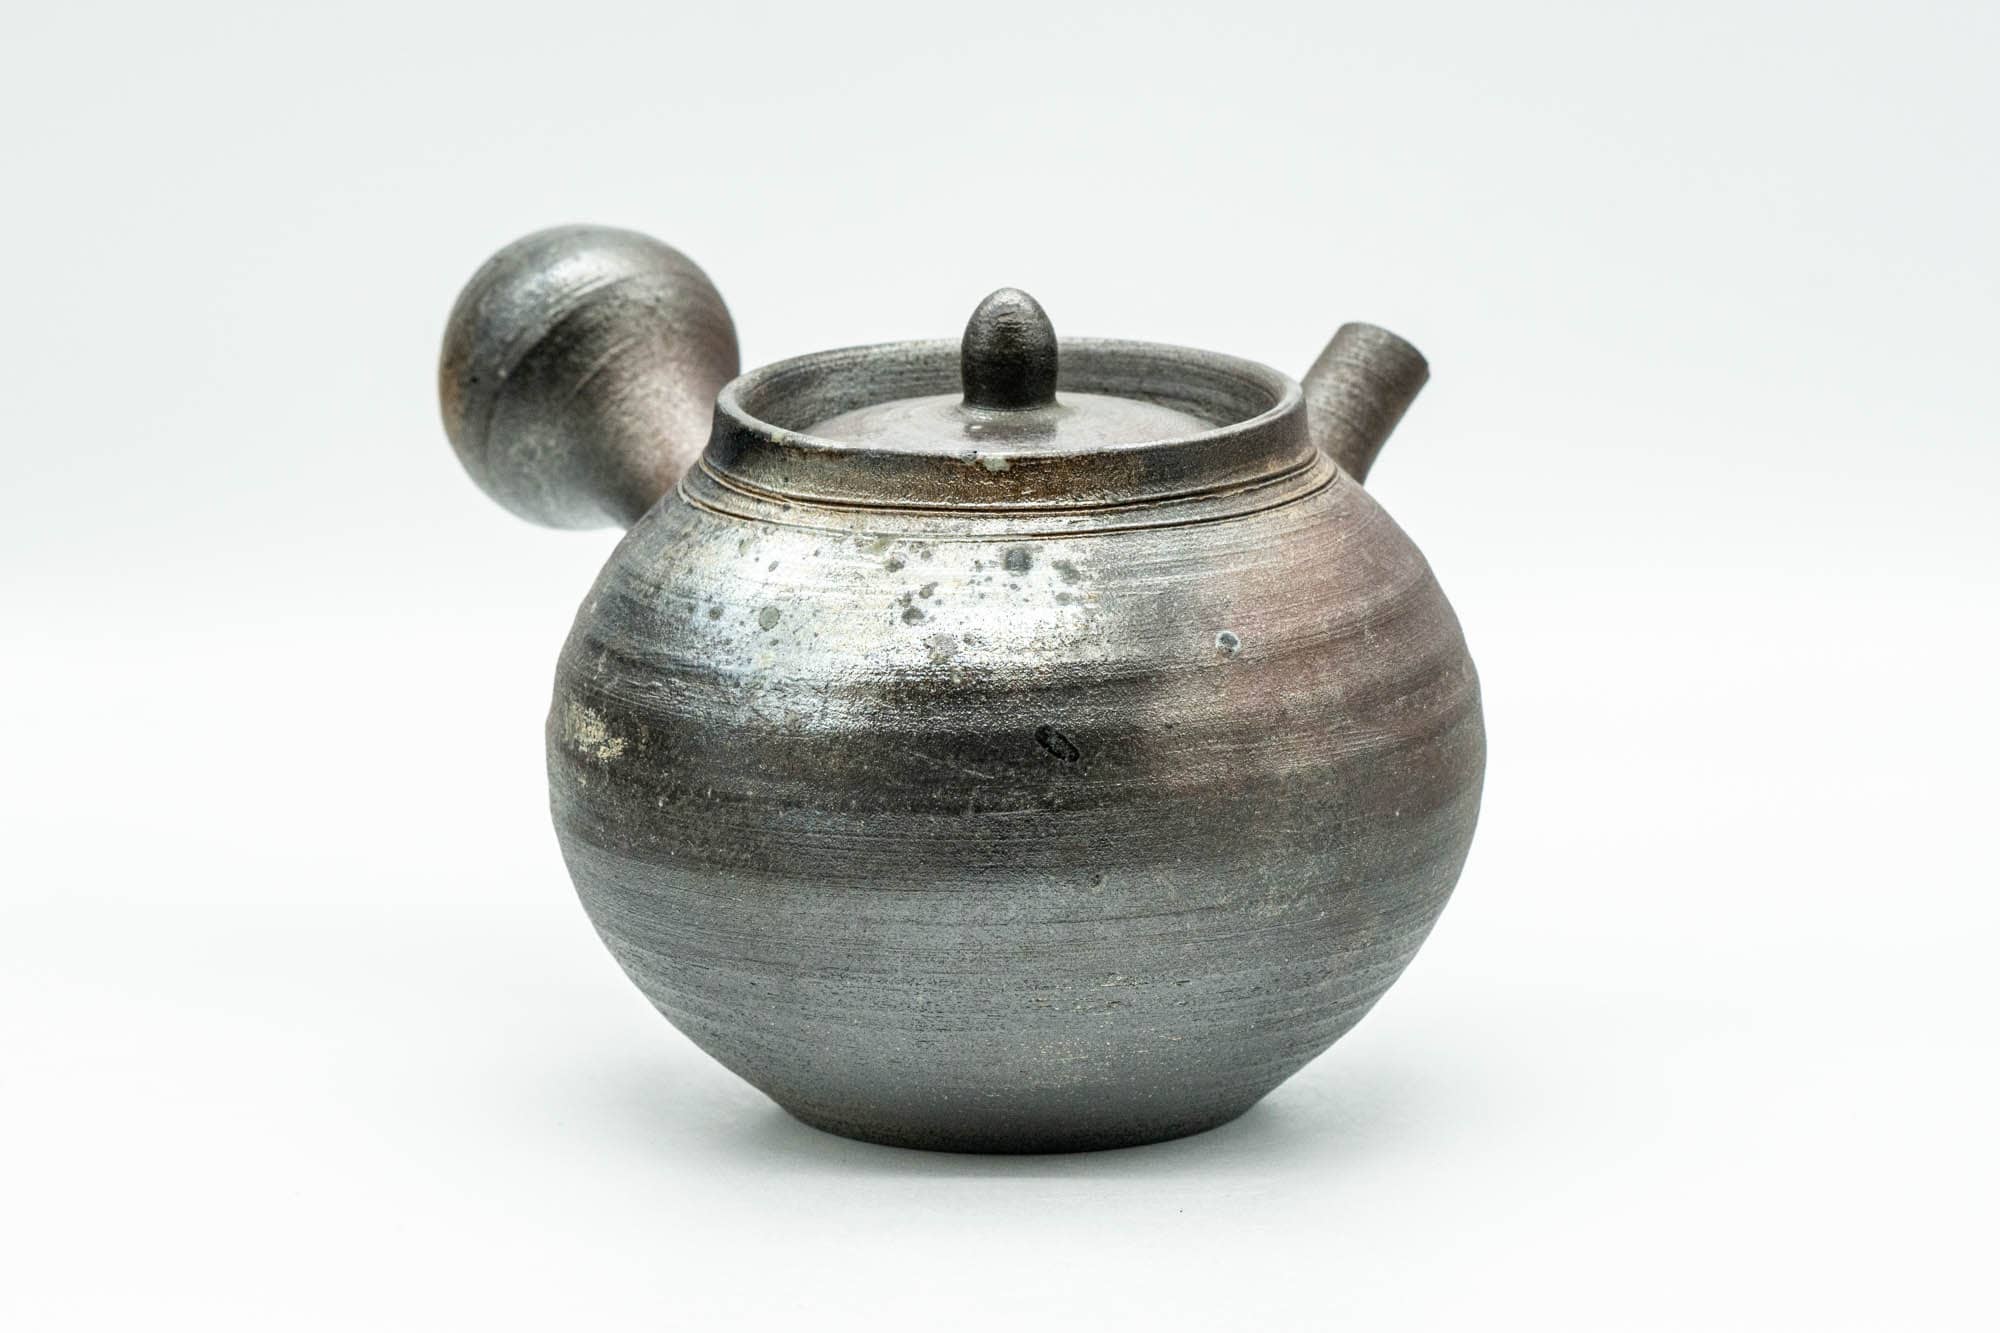 Japanese Kyusu - Ash Glazed Bizen-yaki Ceramic Teapot - 340ml